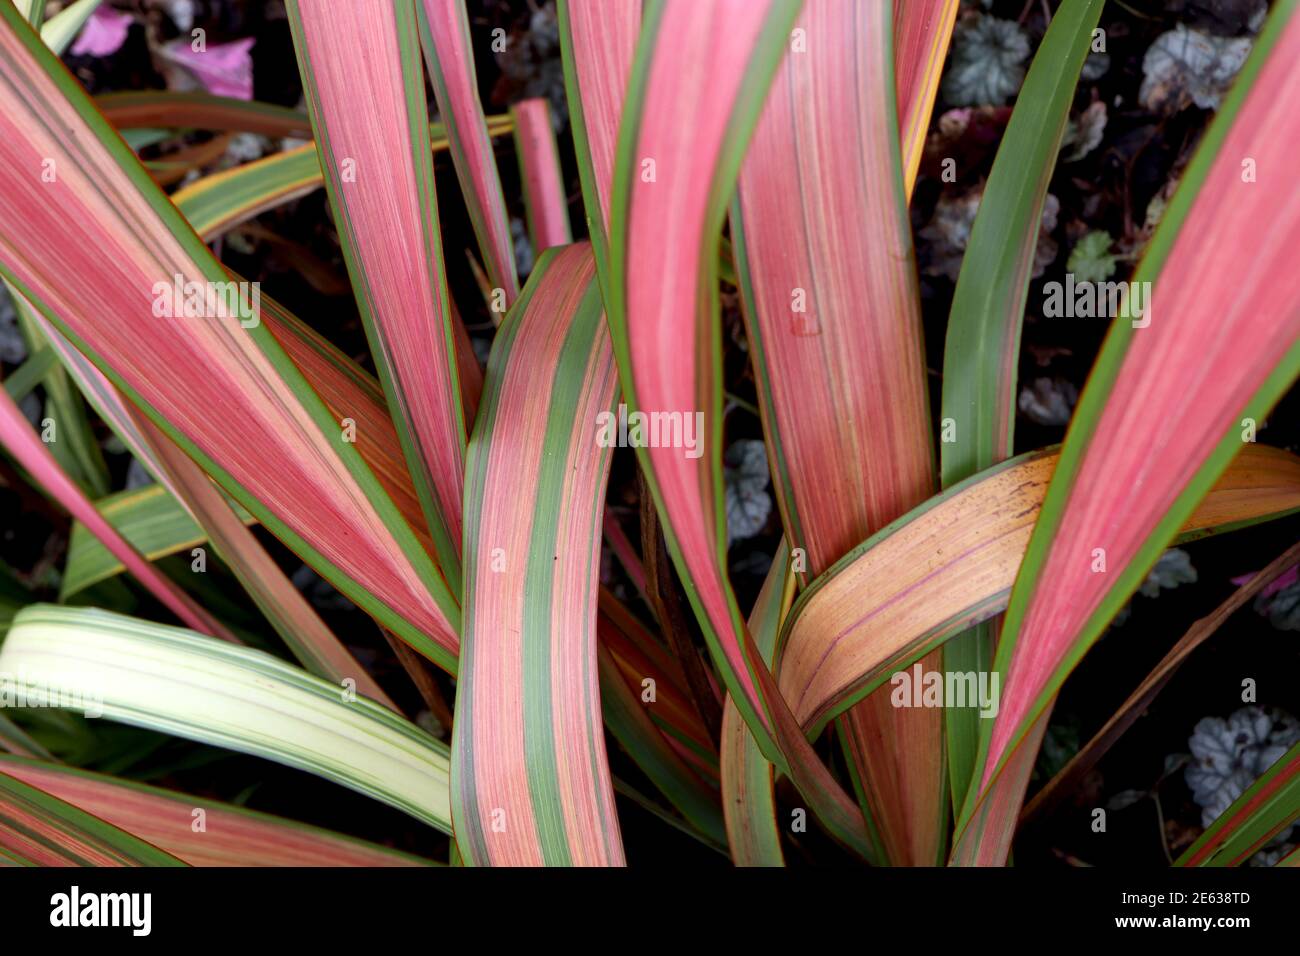 Phormium Tenax ‘Jester’ Flachslilie Jester - rote, rosa und gelbe Blätter eingefasst in lebhaftem Grün, Januar, England, Großbritannien Stockfoto